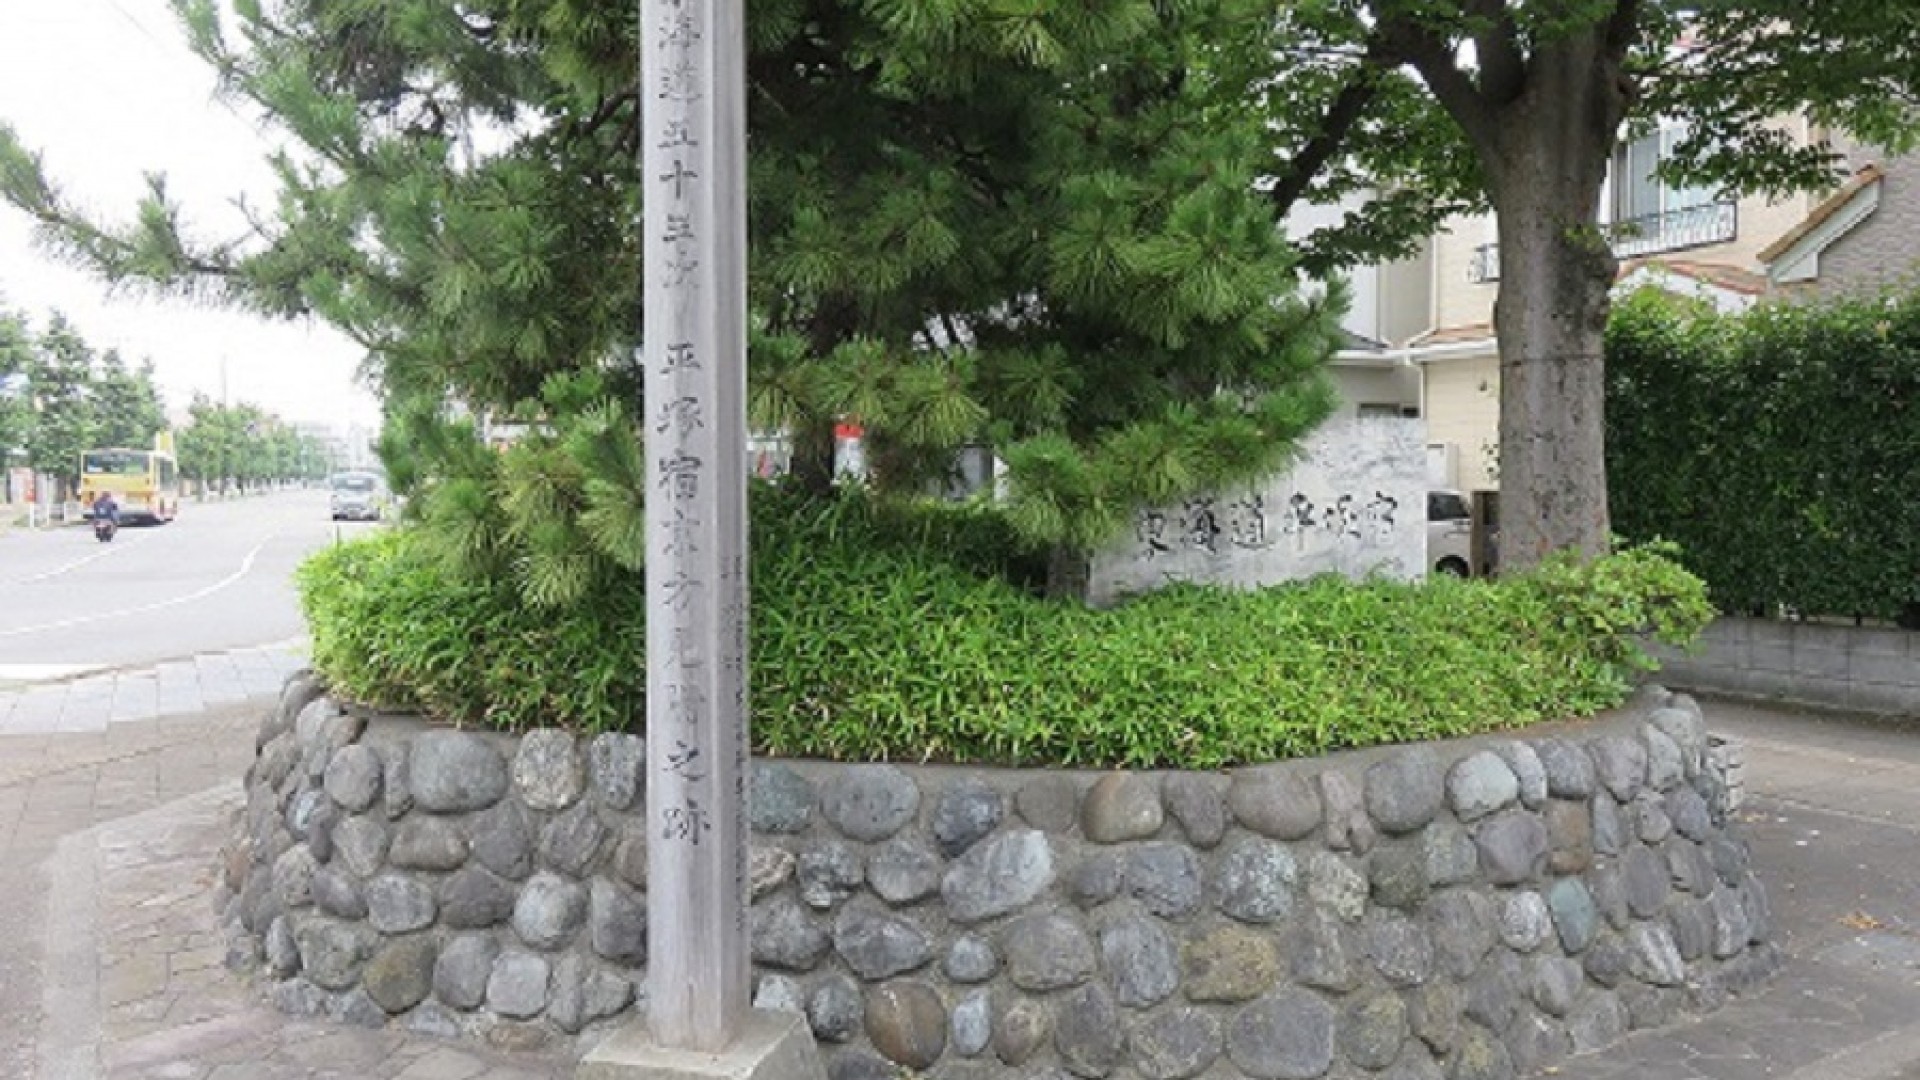 Kyogata Mitsuke Sentry Station Site